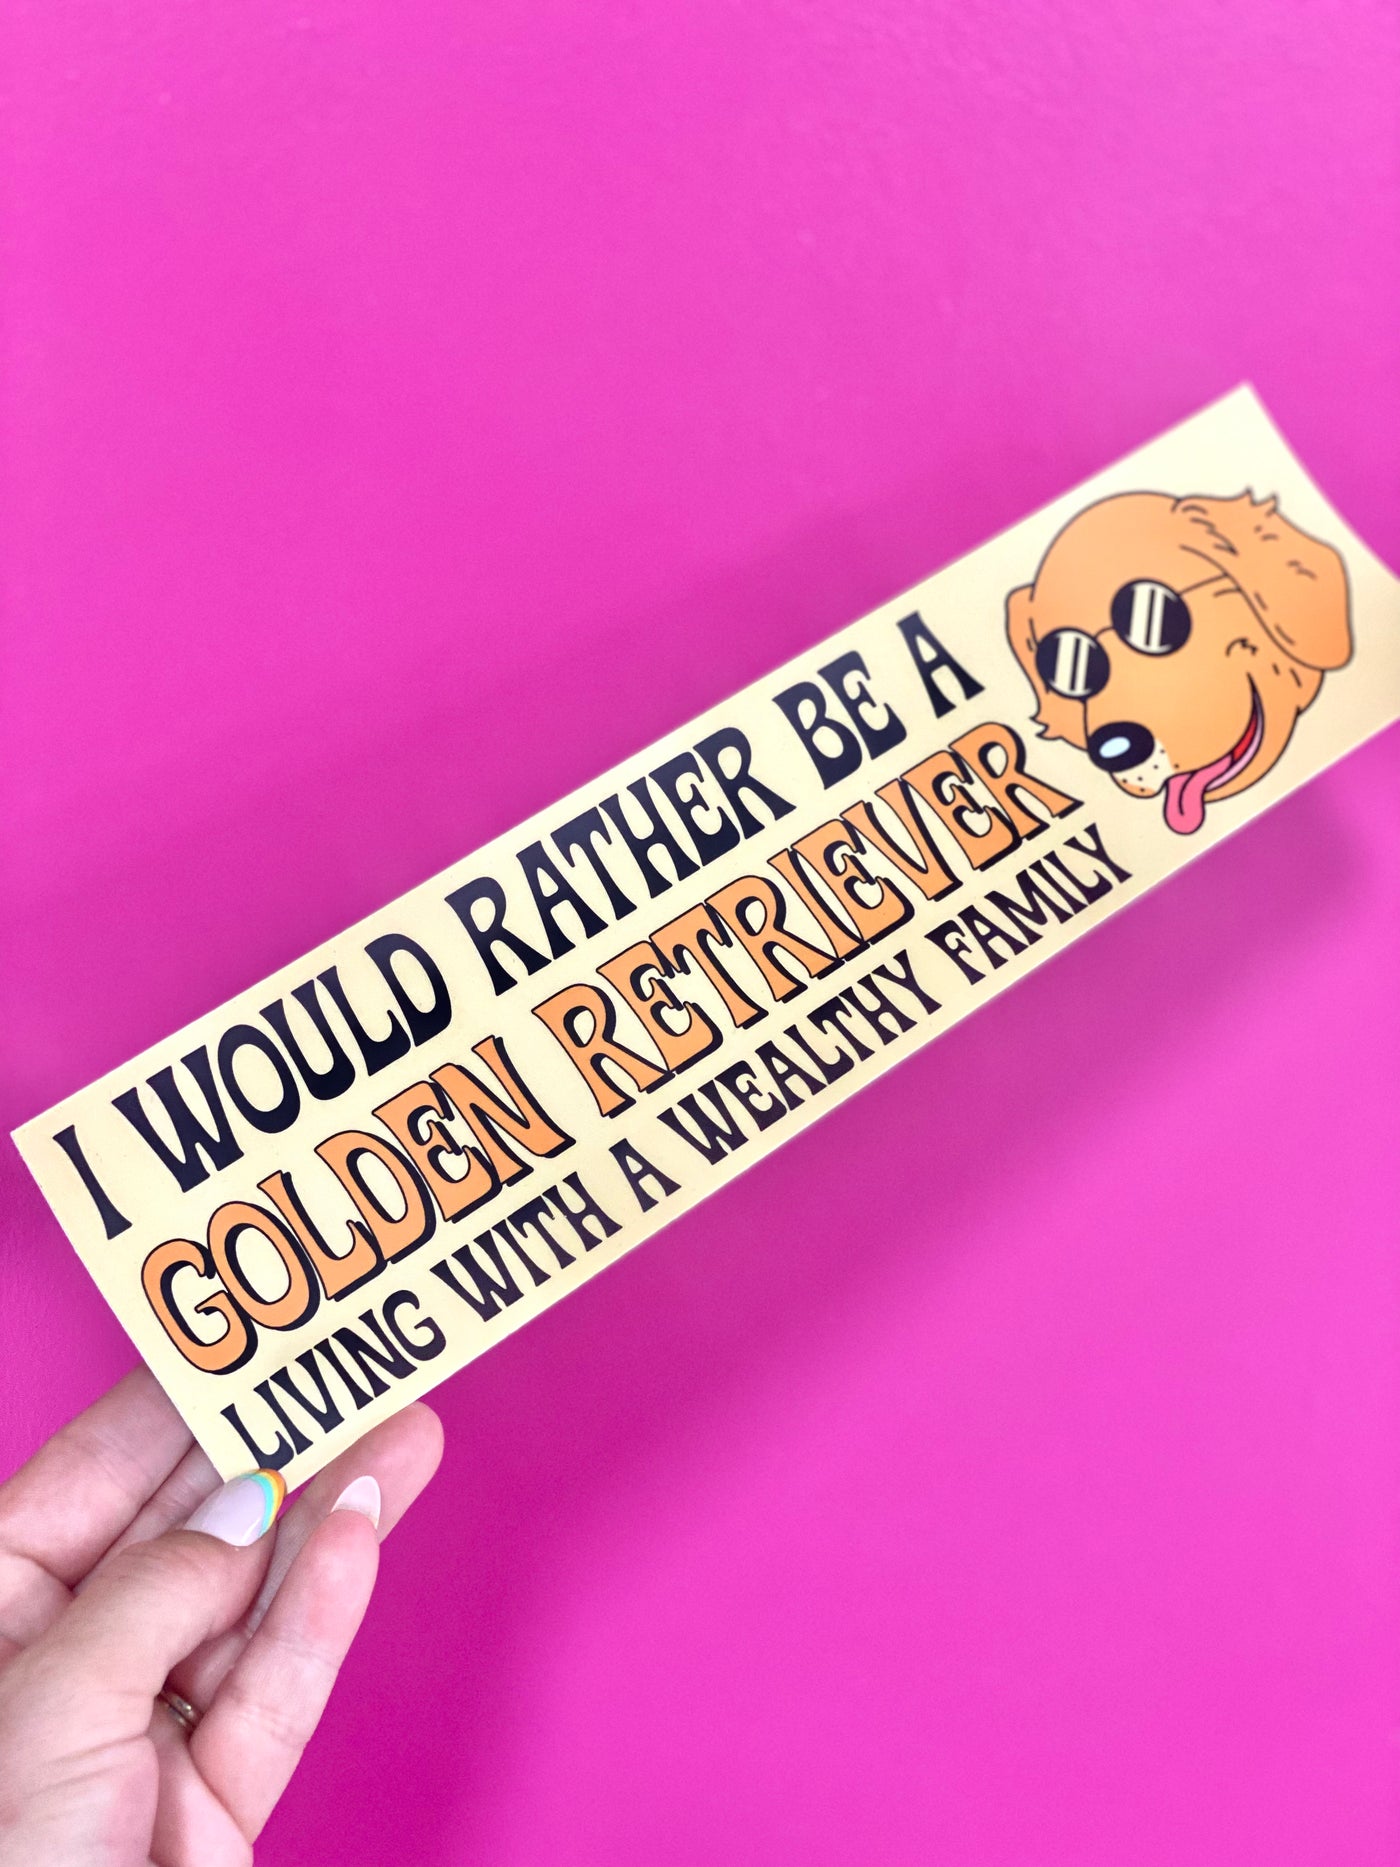 Golden Retriever Bumper Sticker